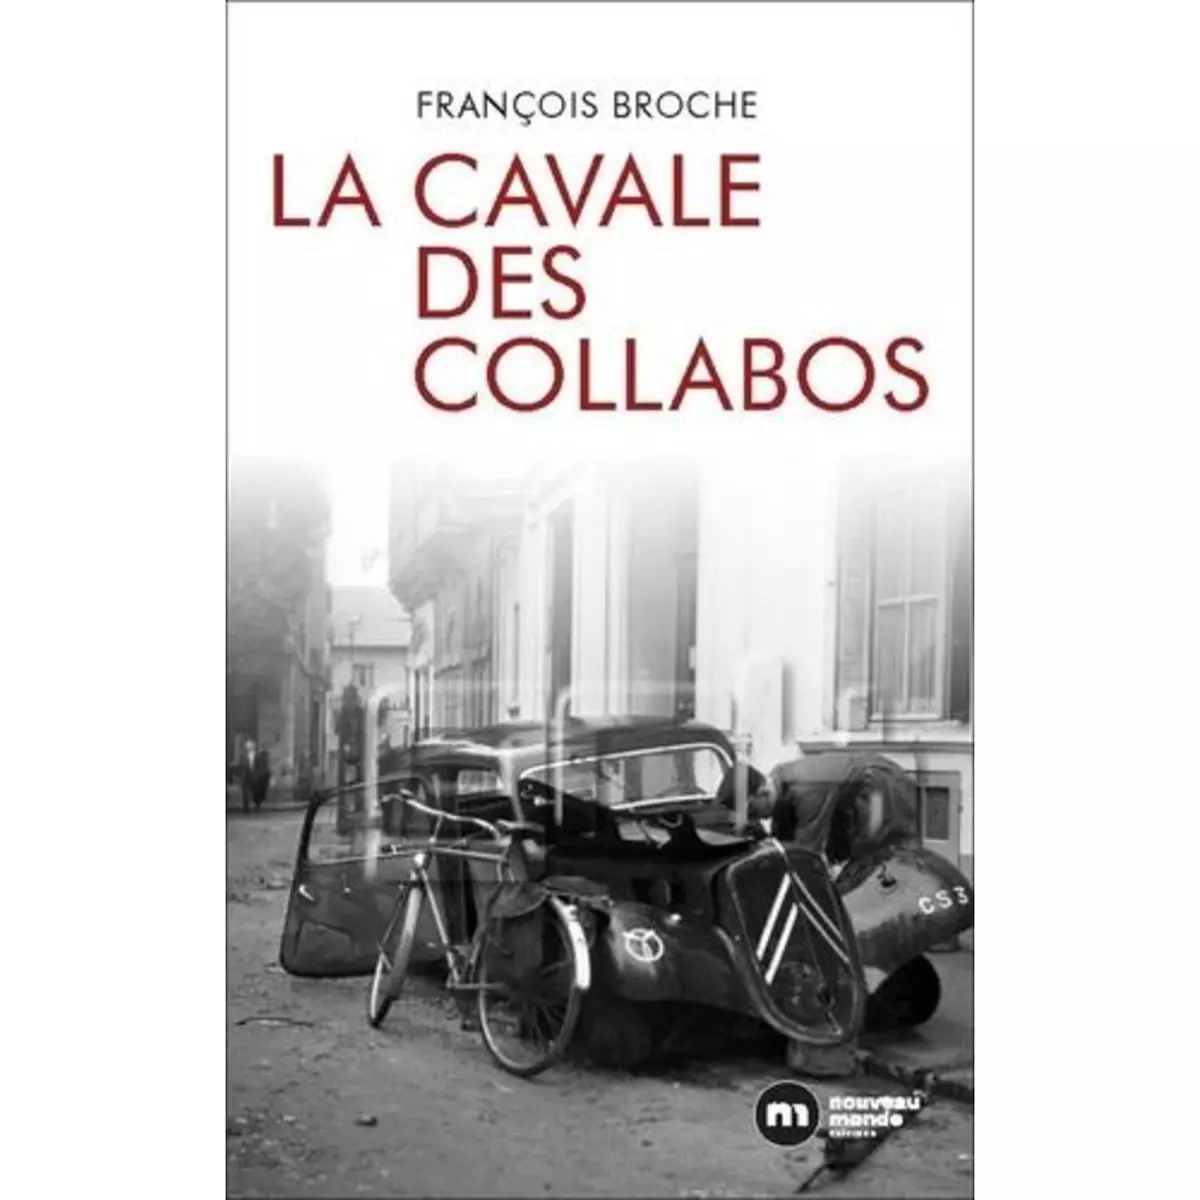  LA CAVALE DES COLLABOS, Broche François